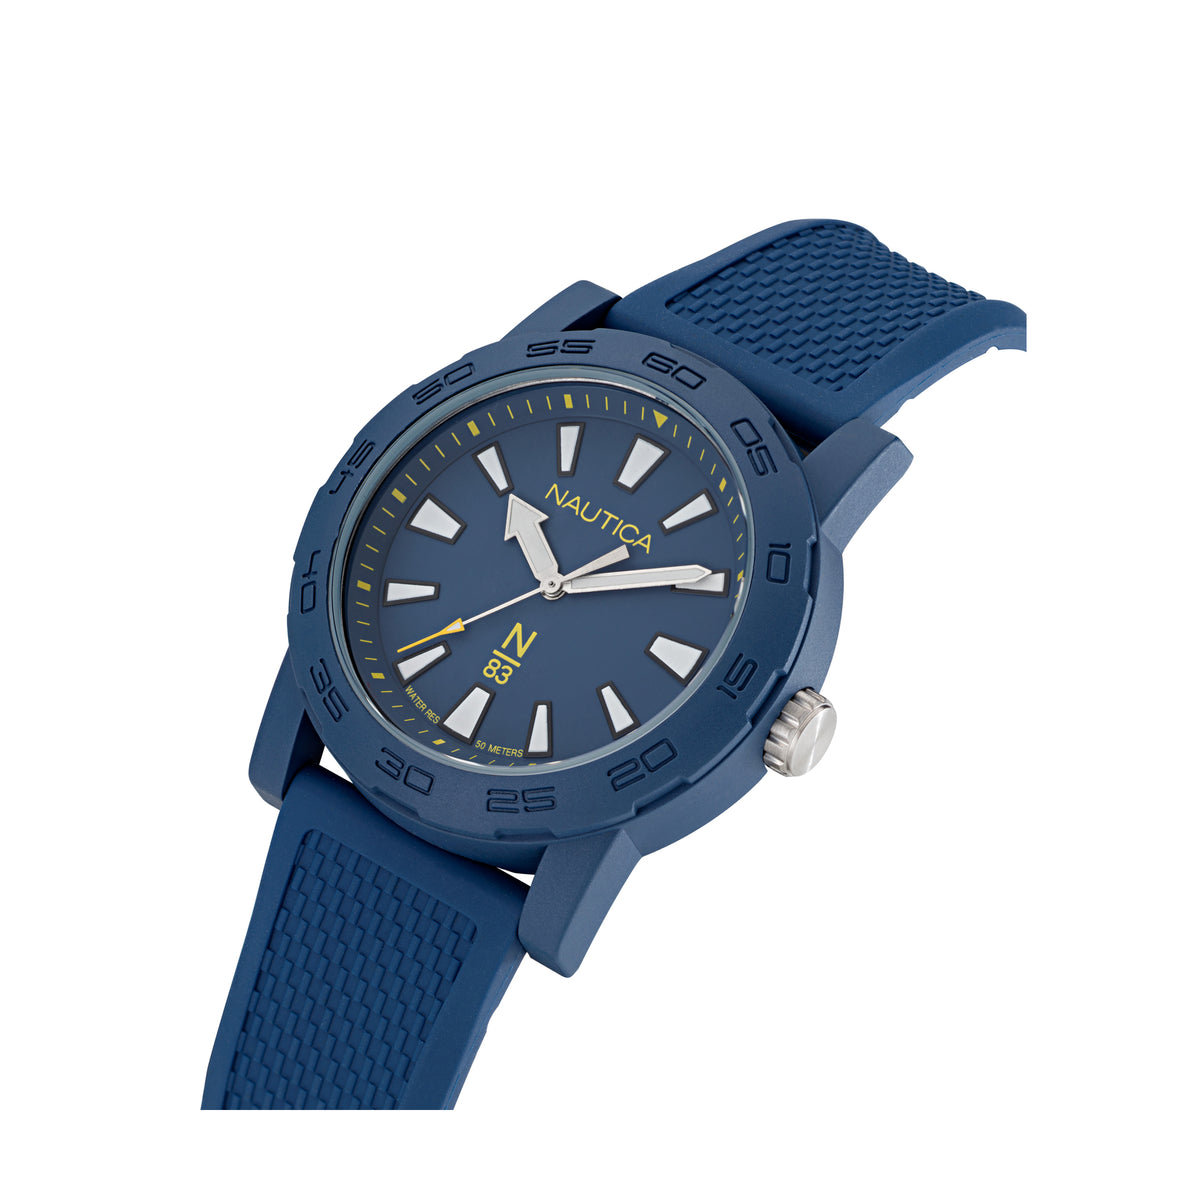 Nautica NAPATF202 N-83 Ayia Triada Blue Analog Silicone Strap Watch For Men